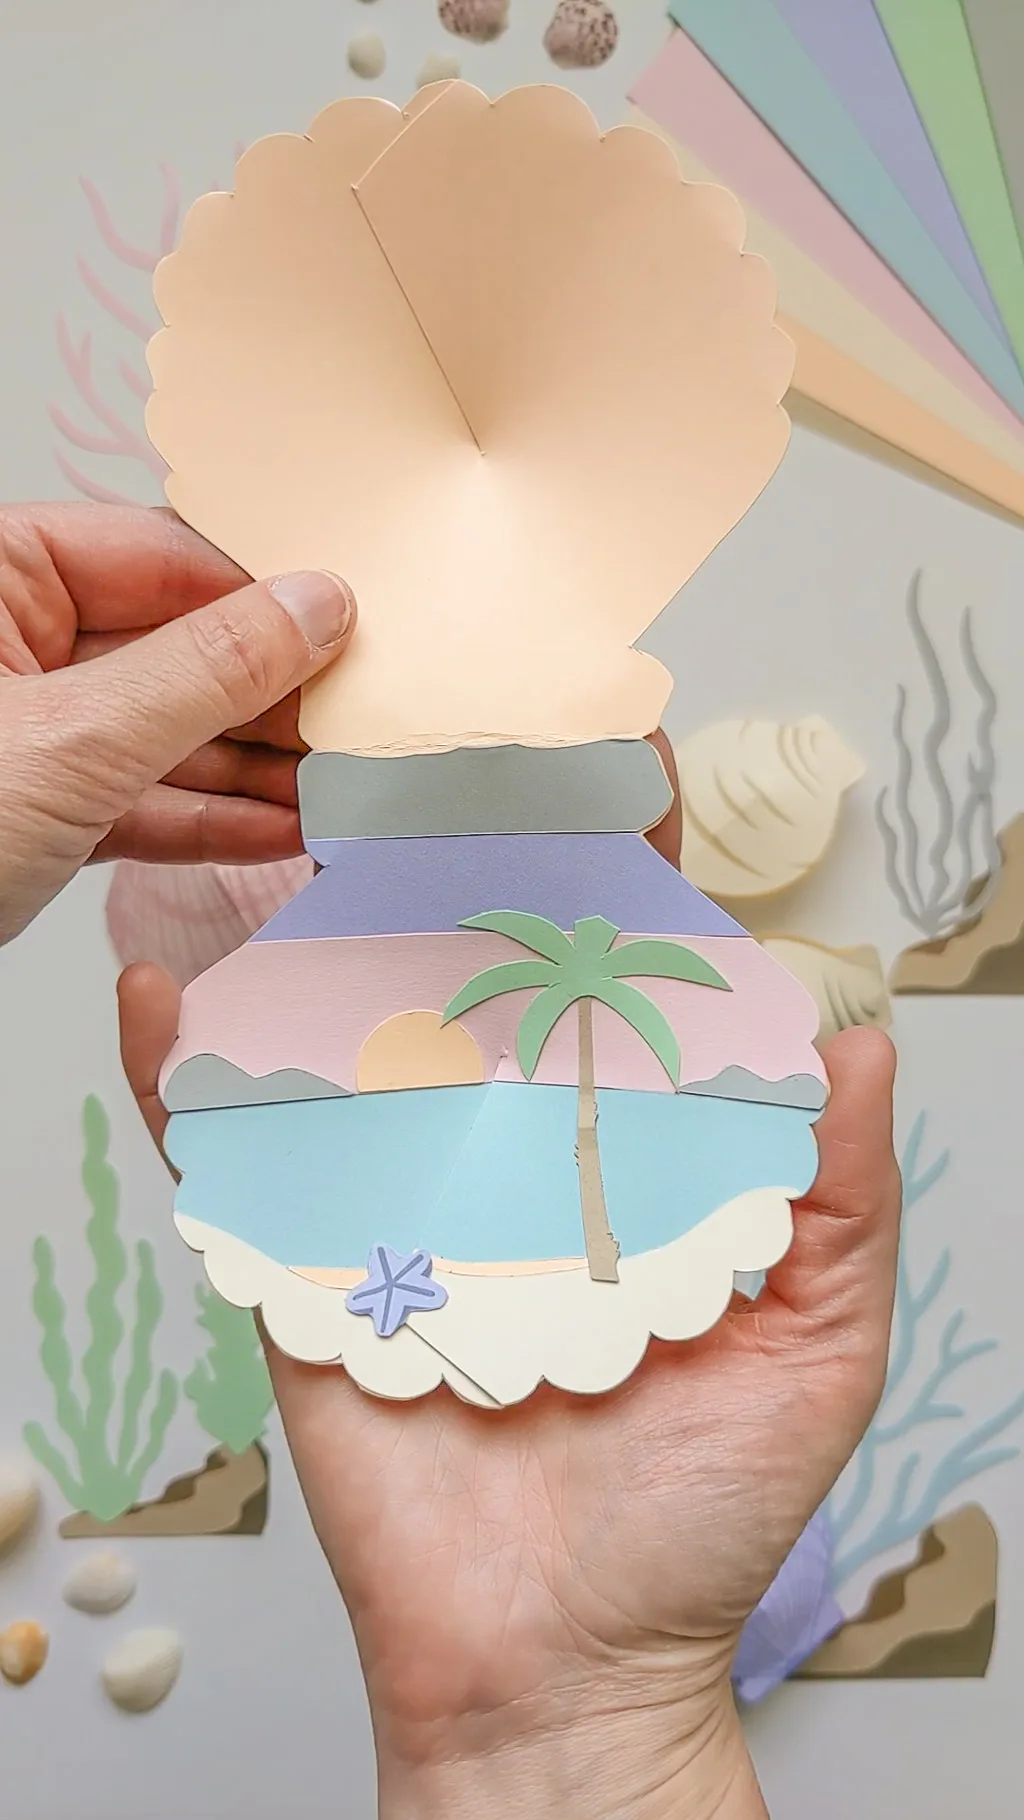 3D paper seashell craft with hidden sunset beach scene inside